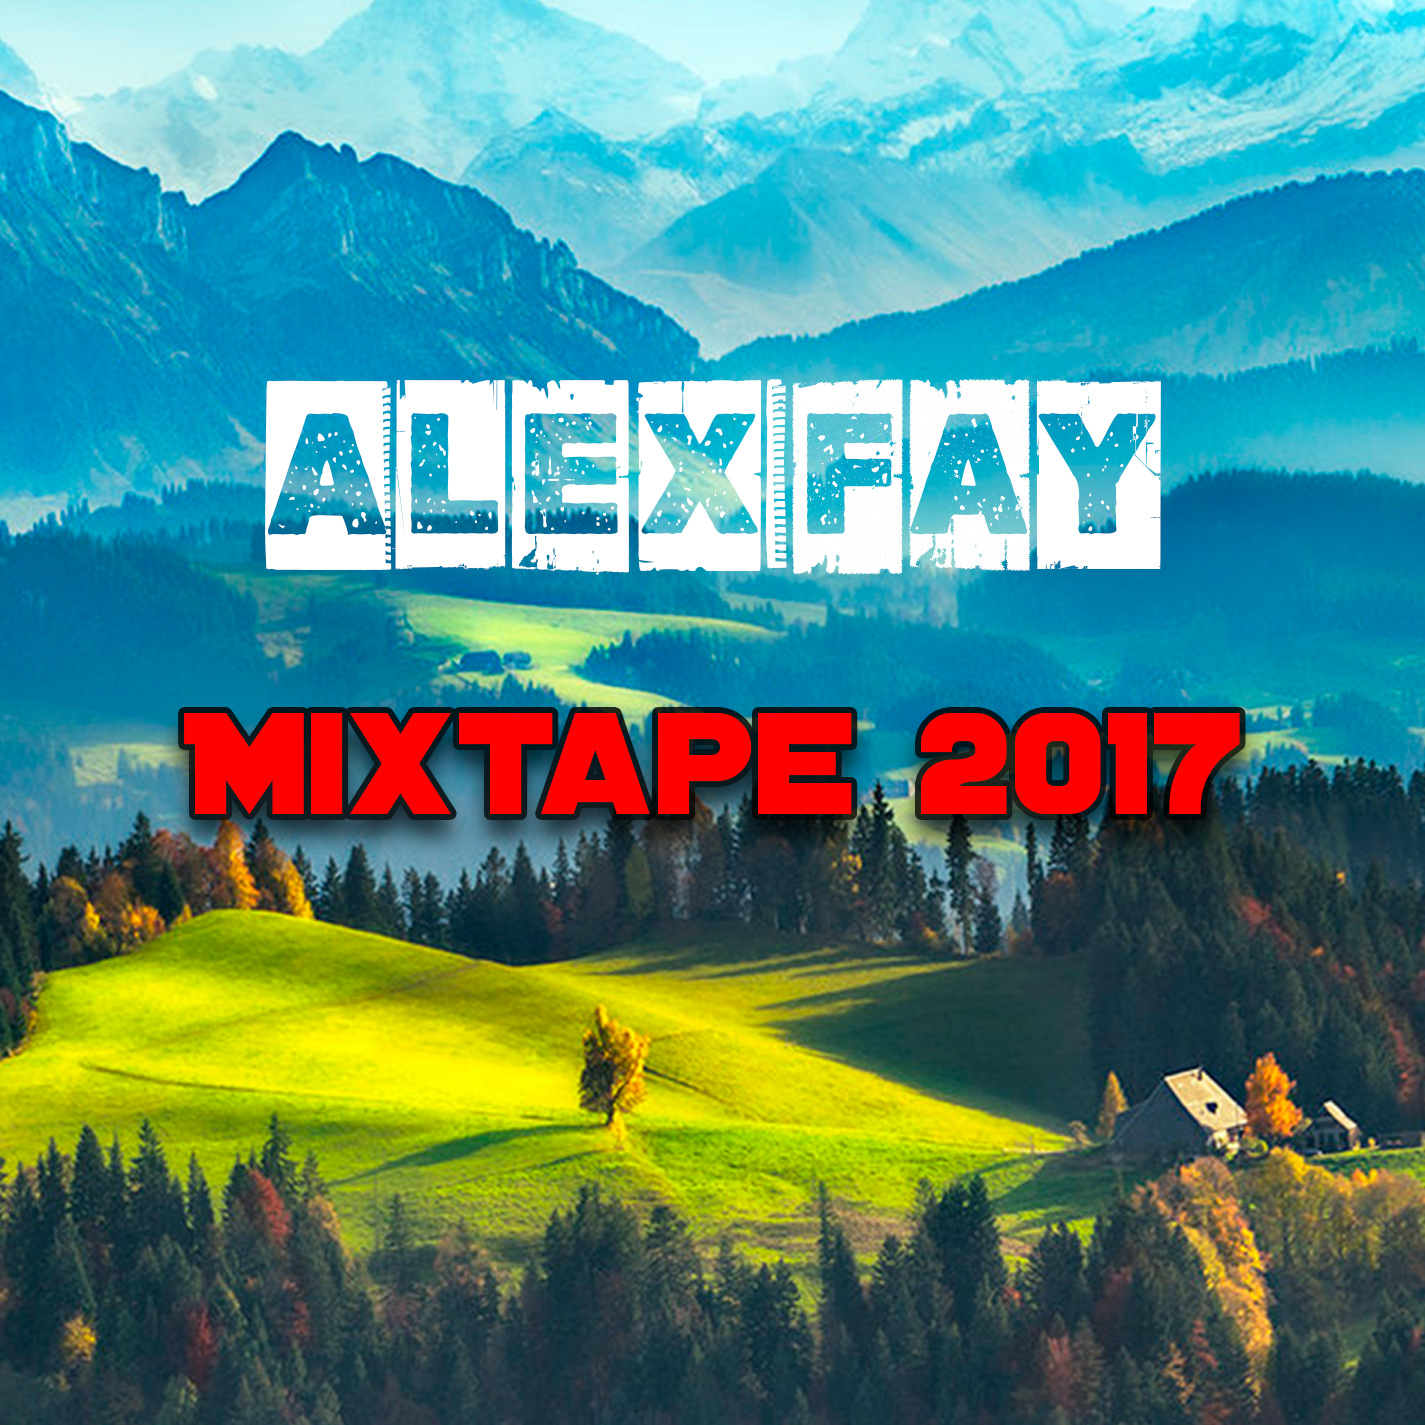 Mixtape 2017